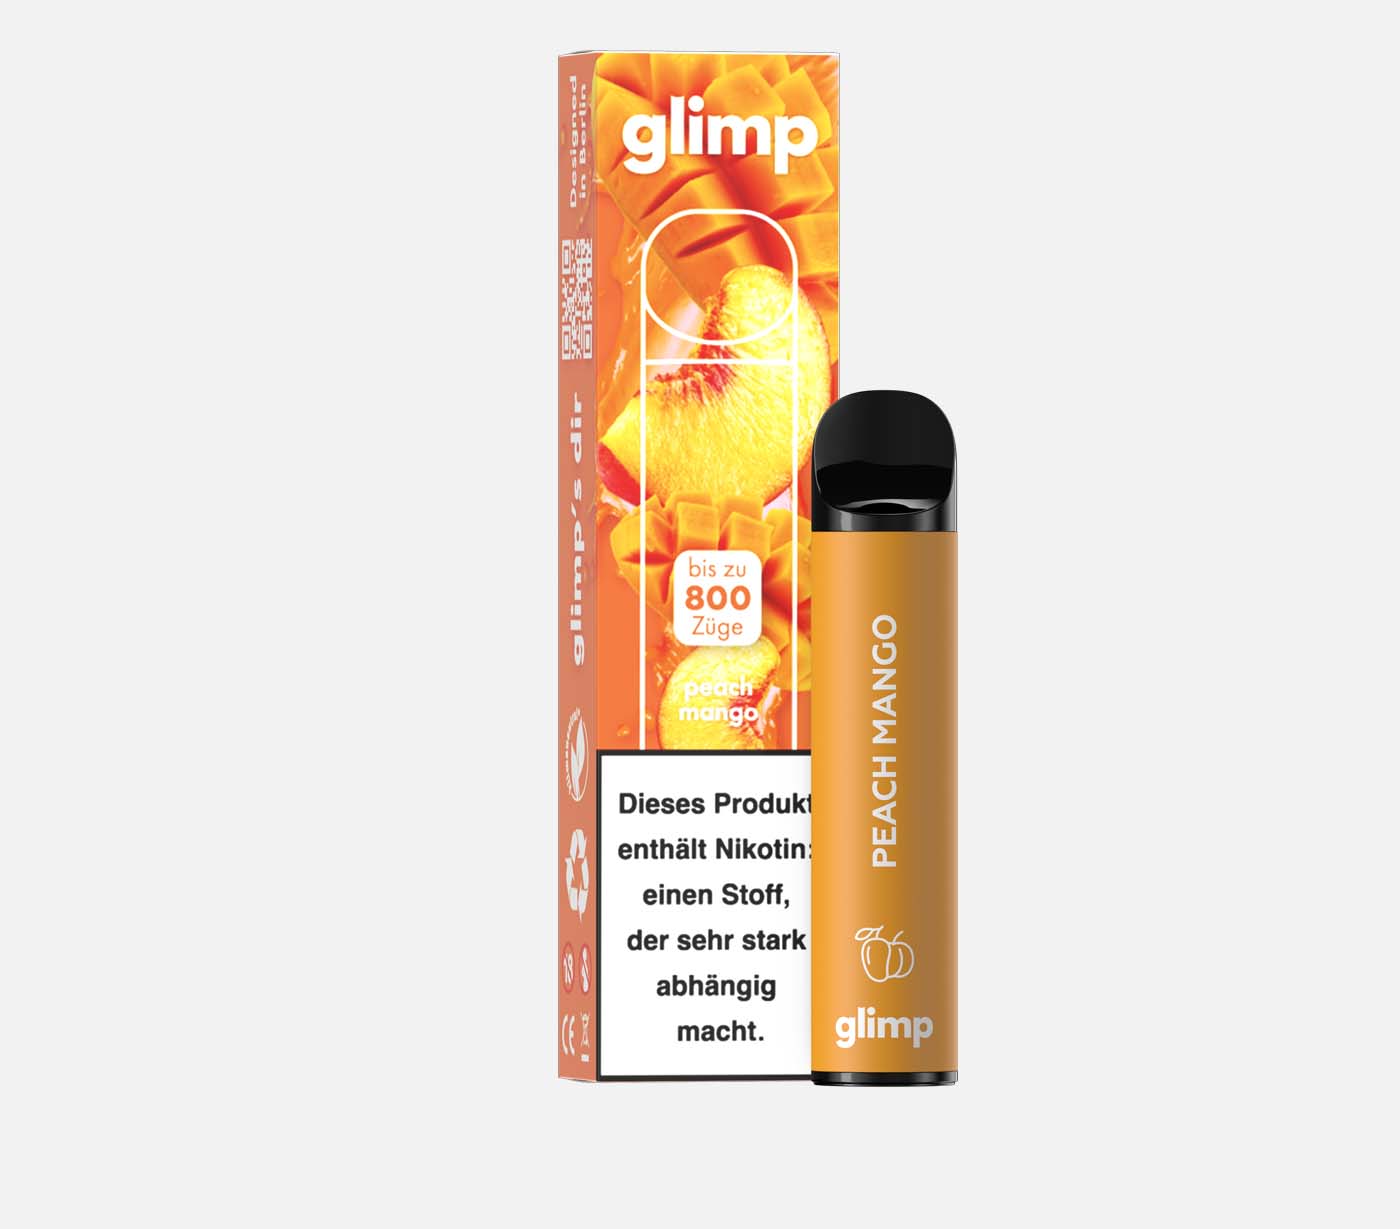 GLIMP 800 Peach Mango Einweg E-Zigarette